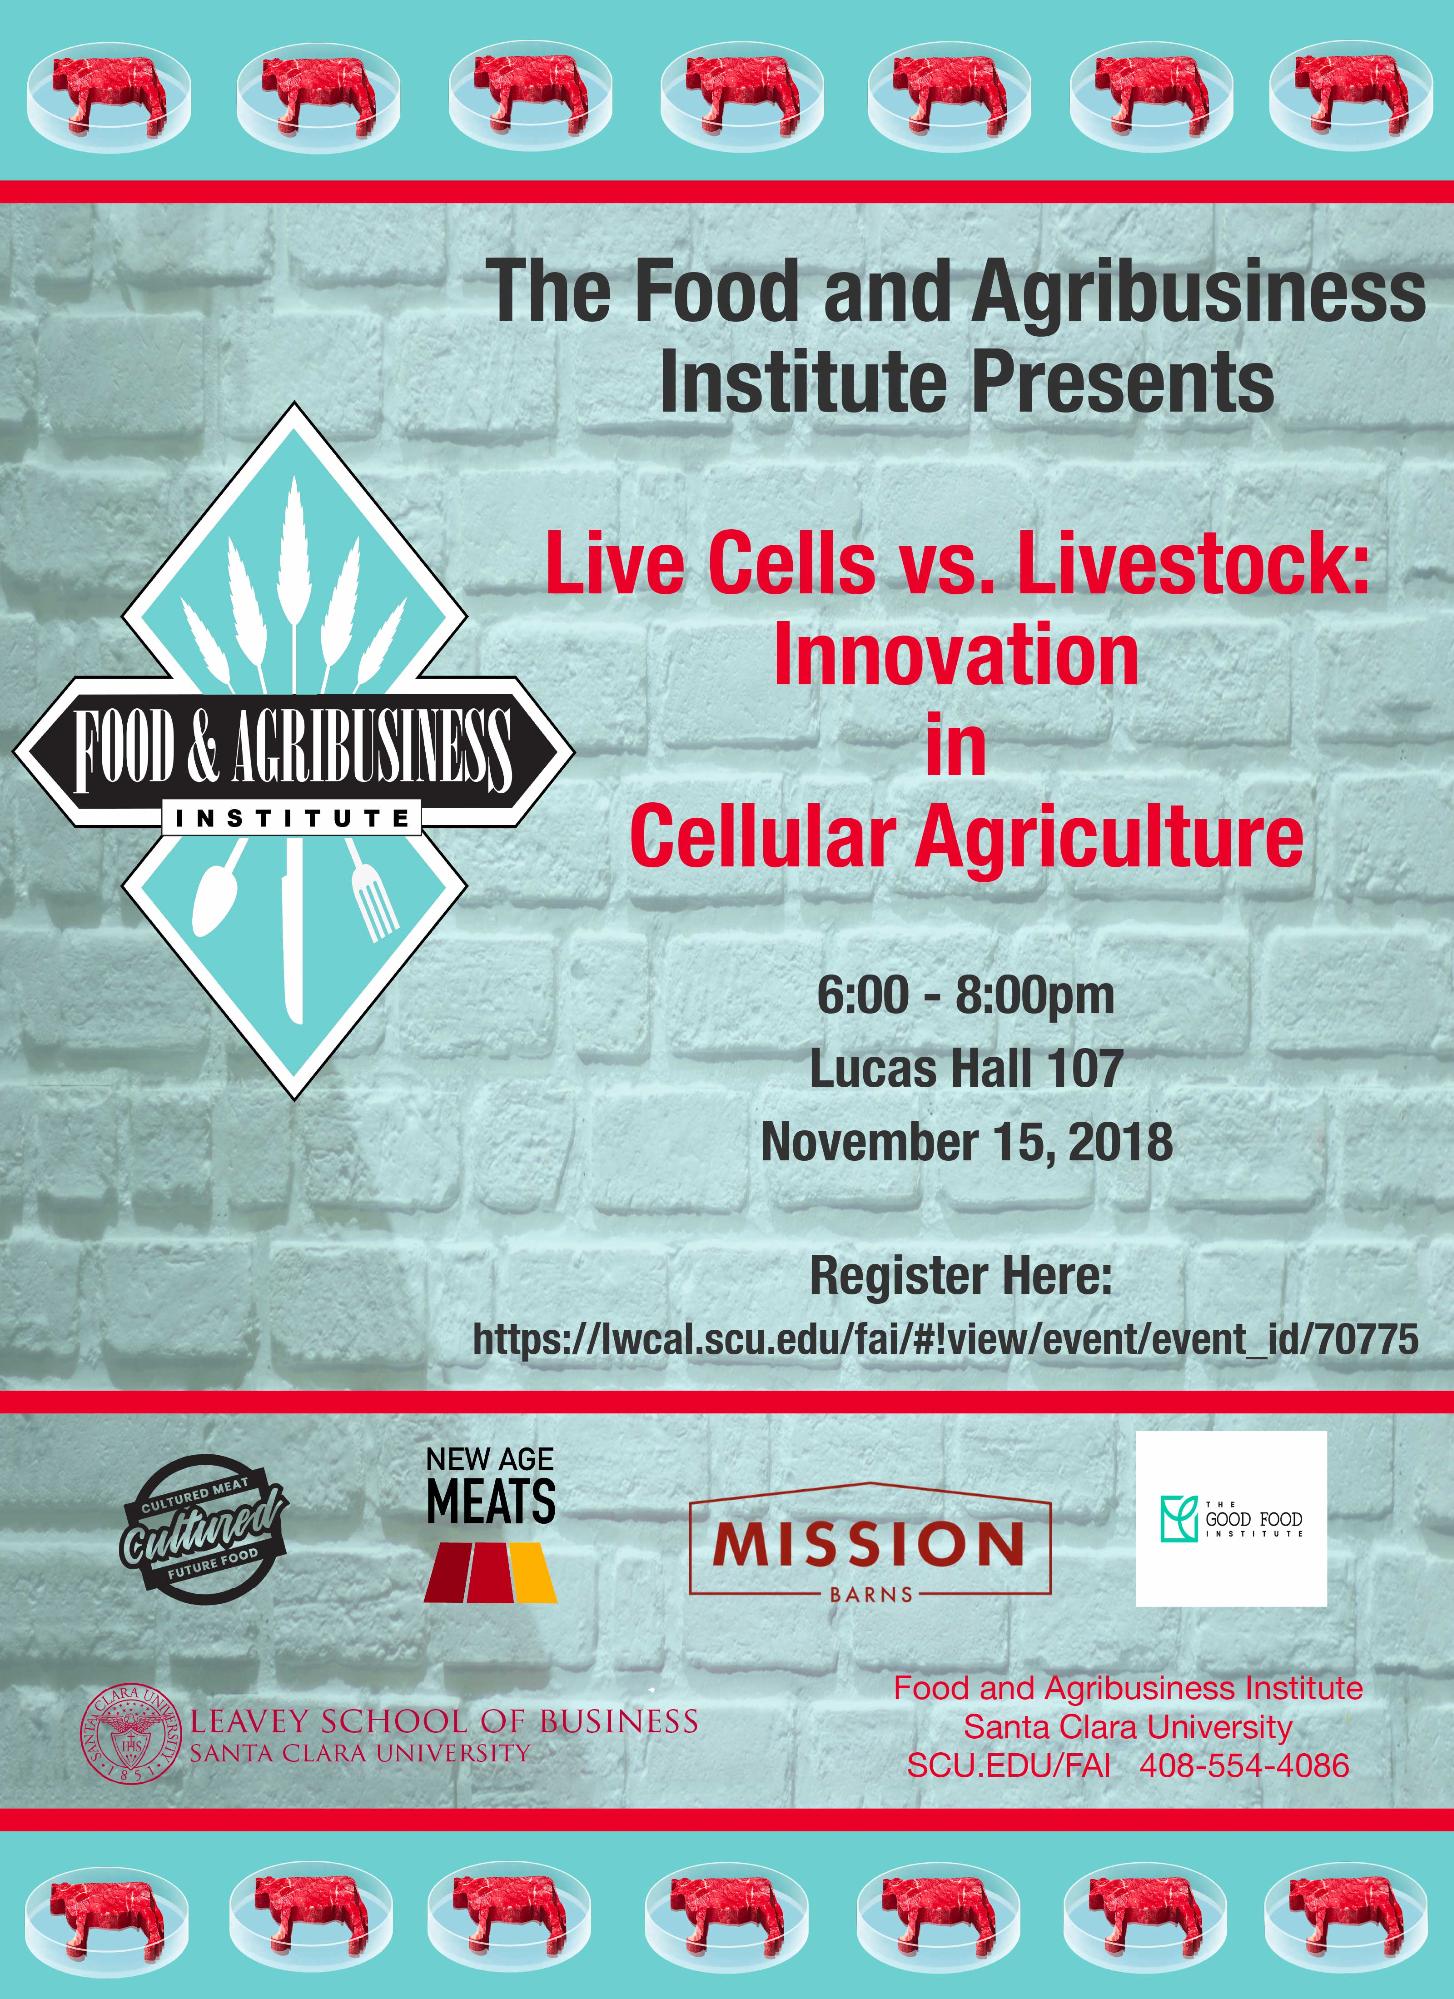 Cellular meat vs. livestock event flyer